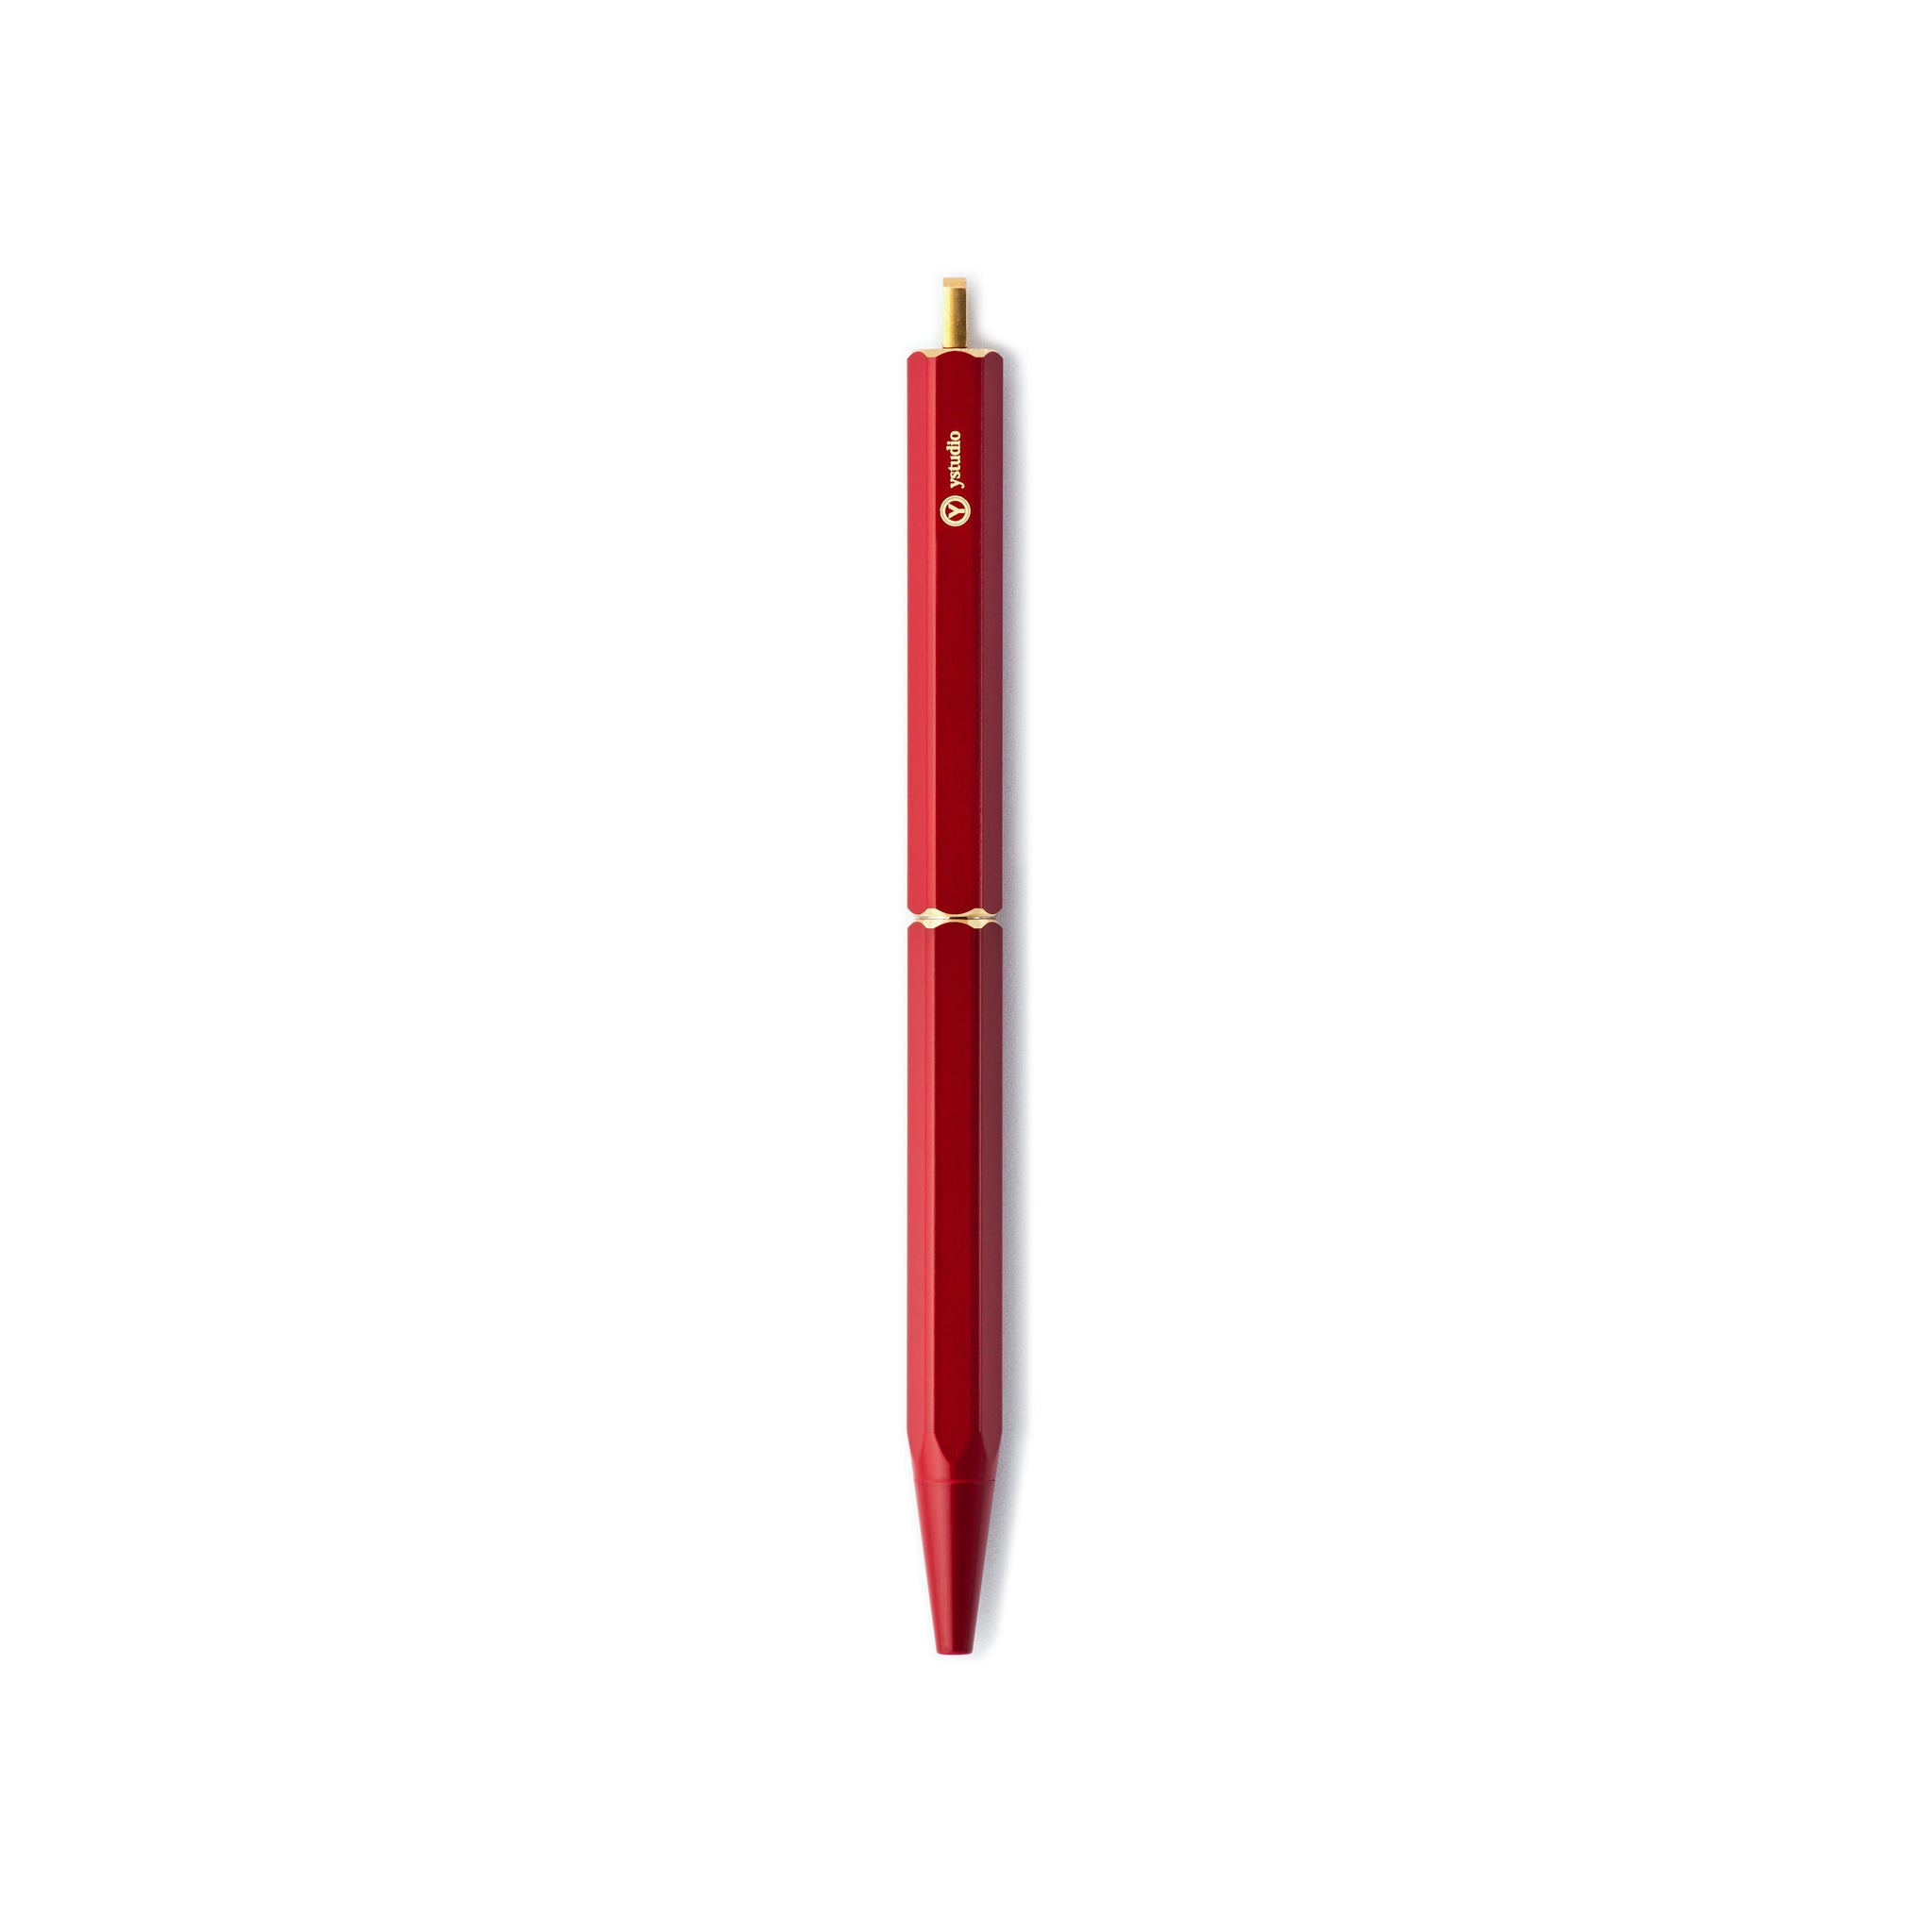 YSTUDIO hordozható golyóstoll - YSTUDIO portable ballpoint pen